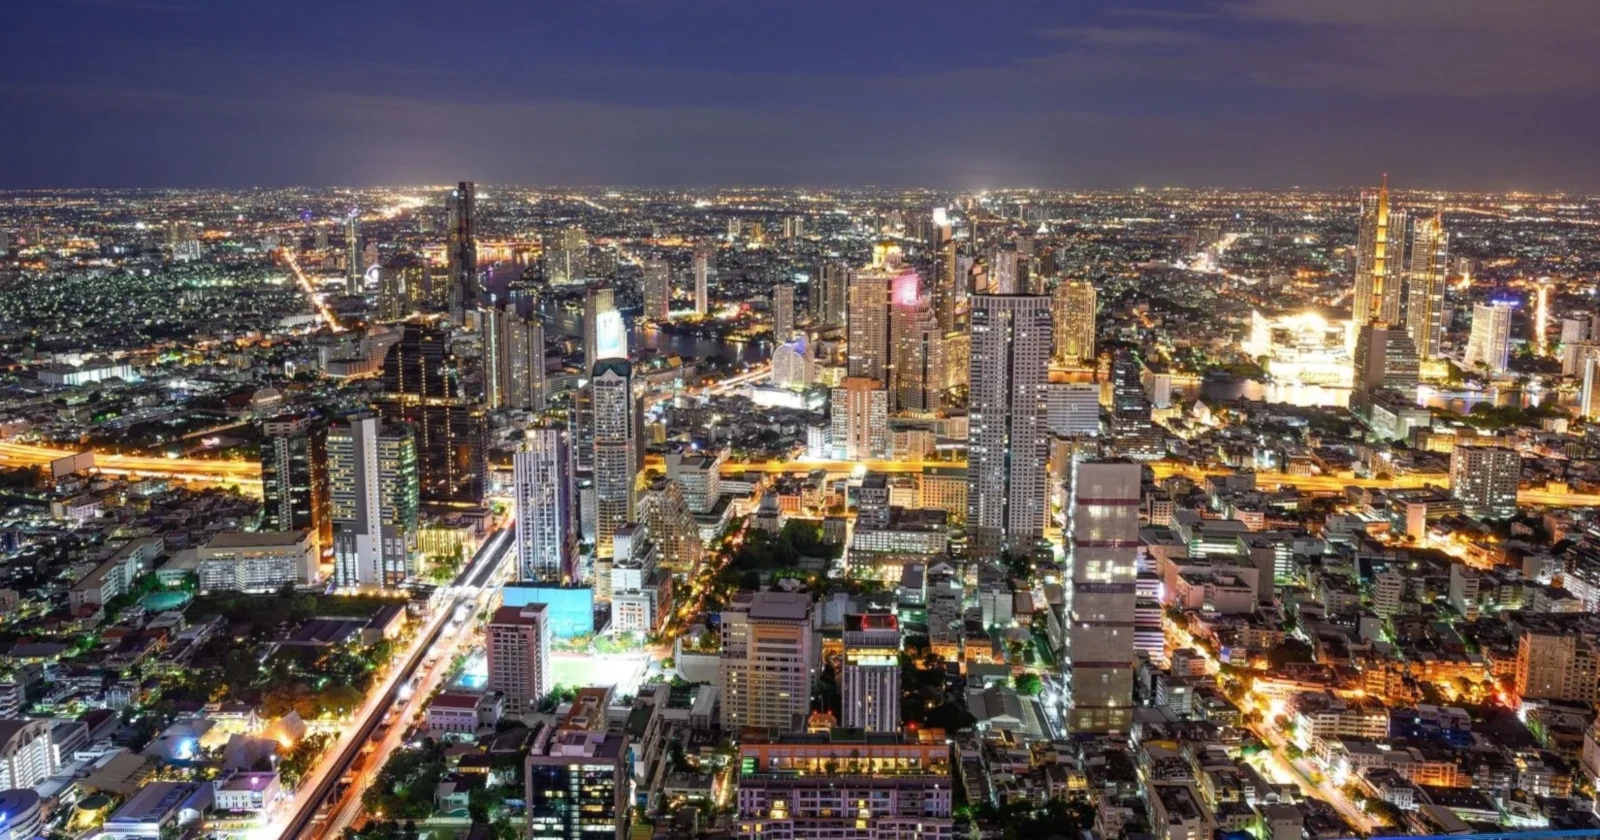 Amazing view of Bangkok at night.